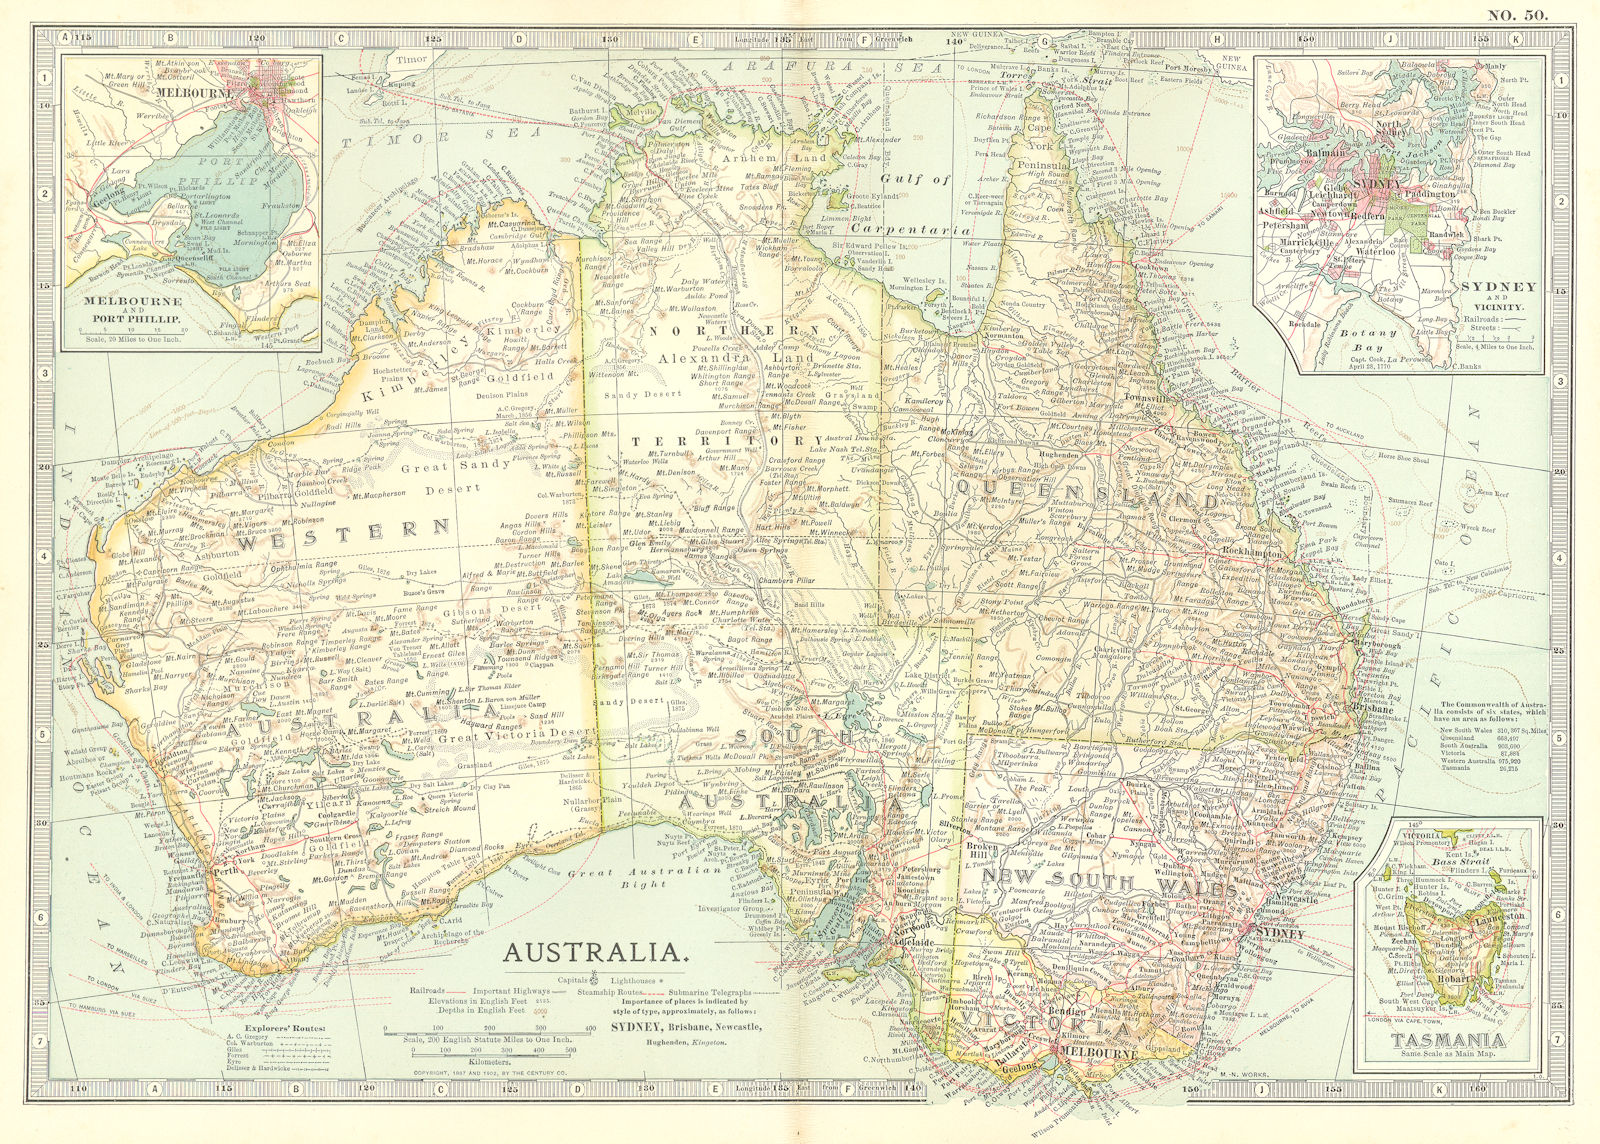 AUSTRALIA. Inset Melbourne, Port Phillip, Sydney Tasmania 1903 old antique map